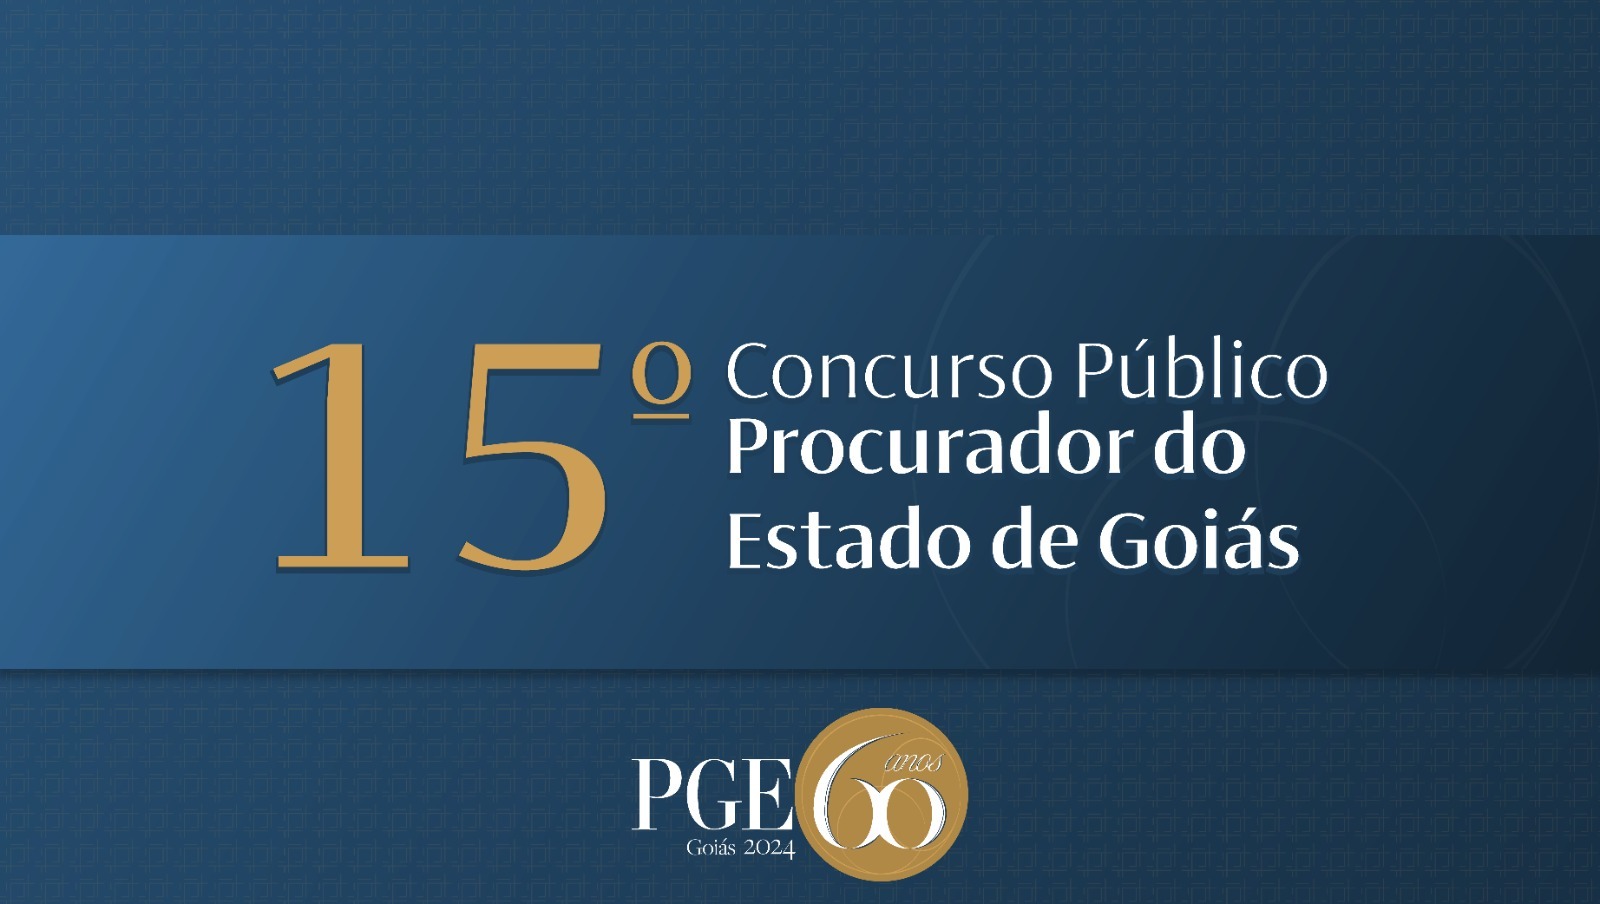 PGE-GO retifica edital de concurso público para procurador do Estado